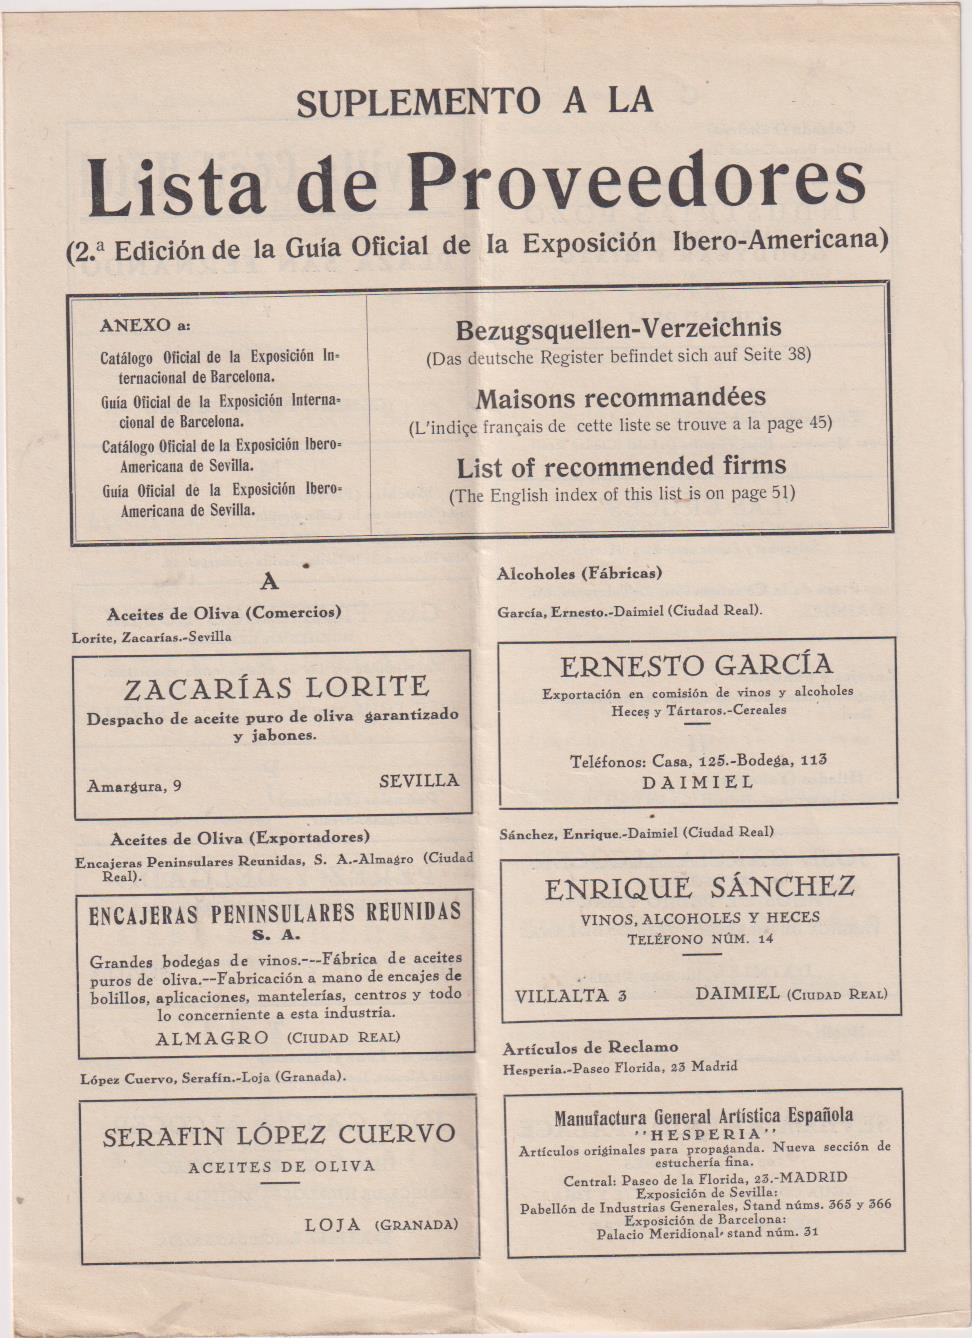 Suplemento a la Lista de Proveedores (2ª Edición de la Guía Oficial Exposición Ibero-Americana